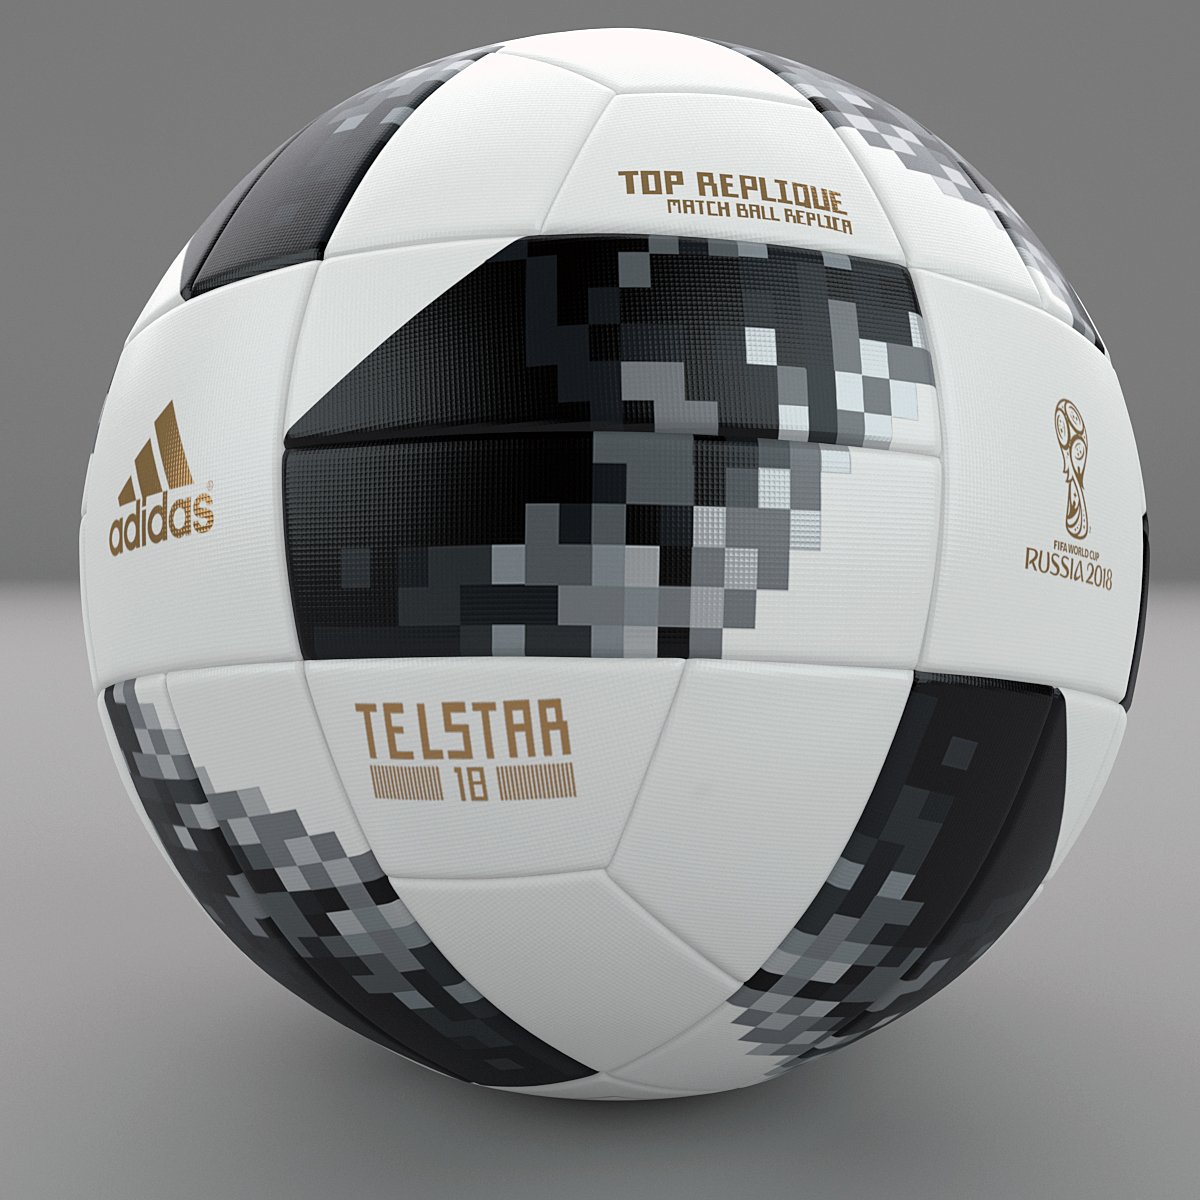 adidas telstar 18 world cup top replique 3D Model Sports Equipment 3DExport